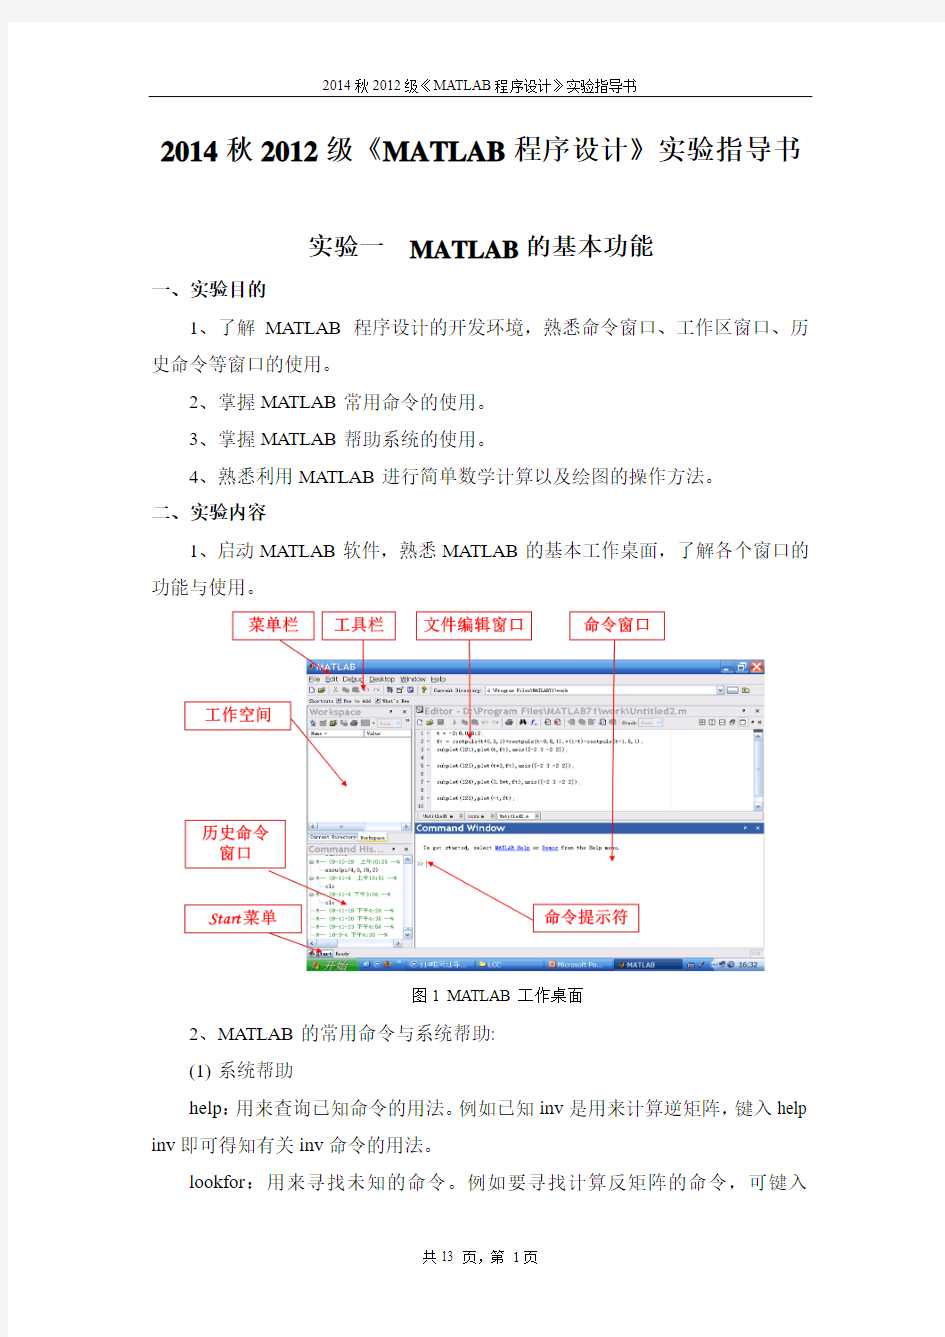 河北工业大学MATLABMATLAB程序设计实验指导书